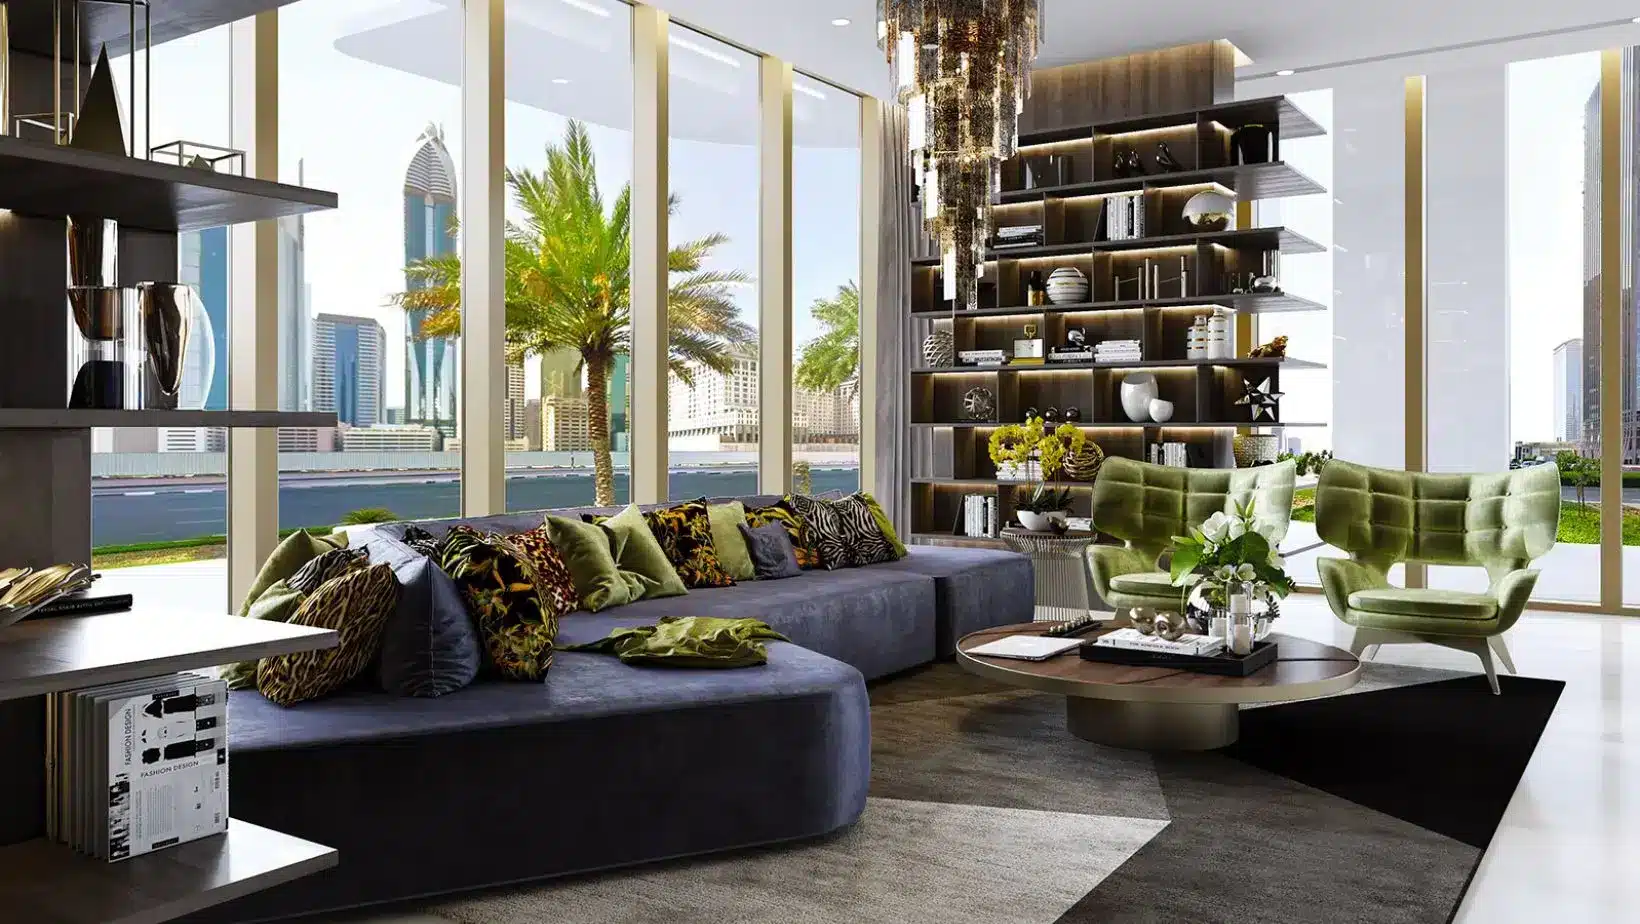 برج اوربان اويسس دبي، Urban Oasis Tower Dubai